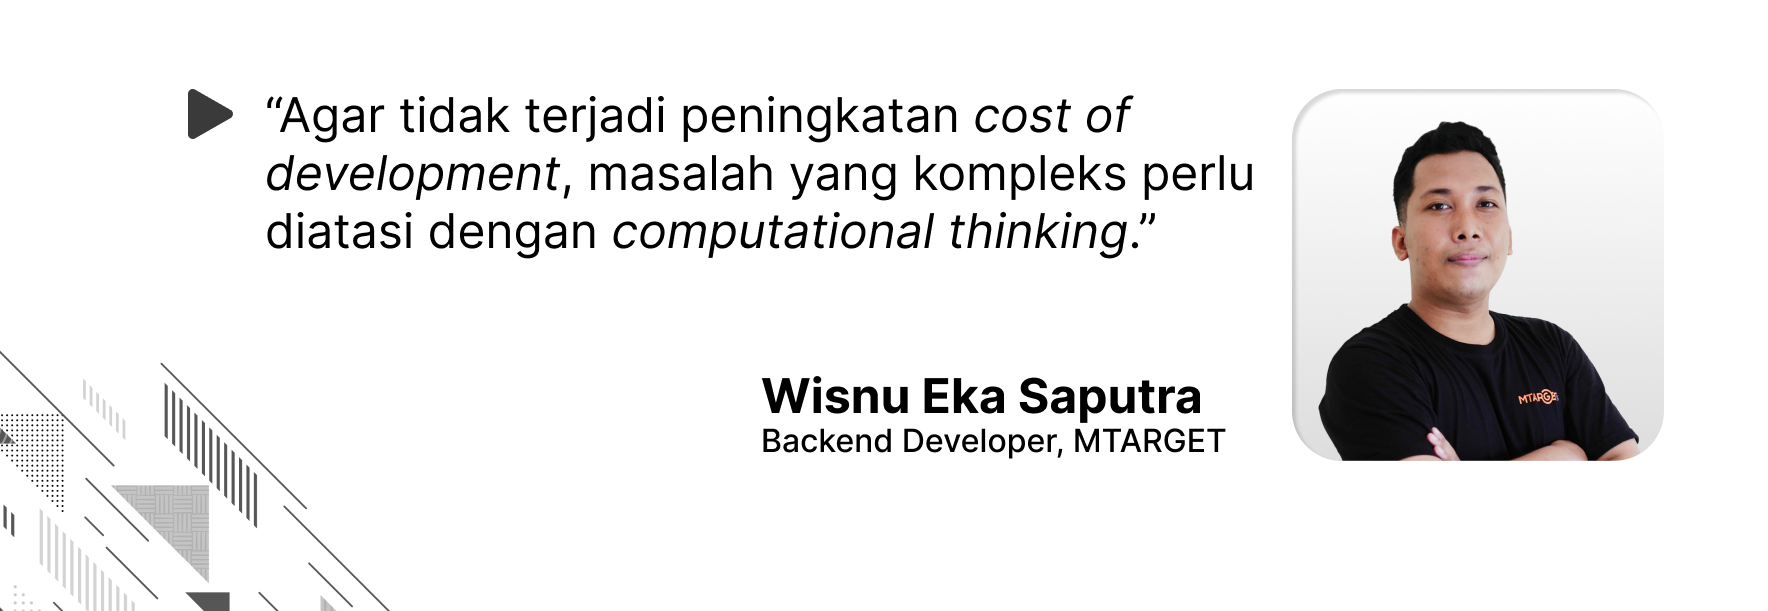 Quote oleh Wisnu Eka Saputra, bahwa computational thinking penting bagi para developer demi menekan cost of development.